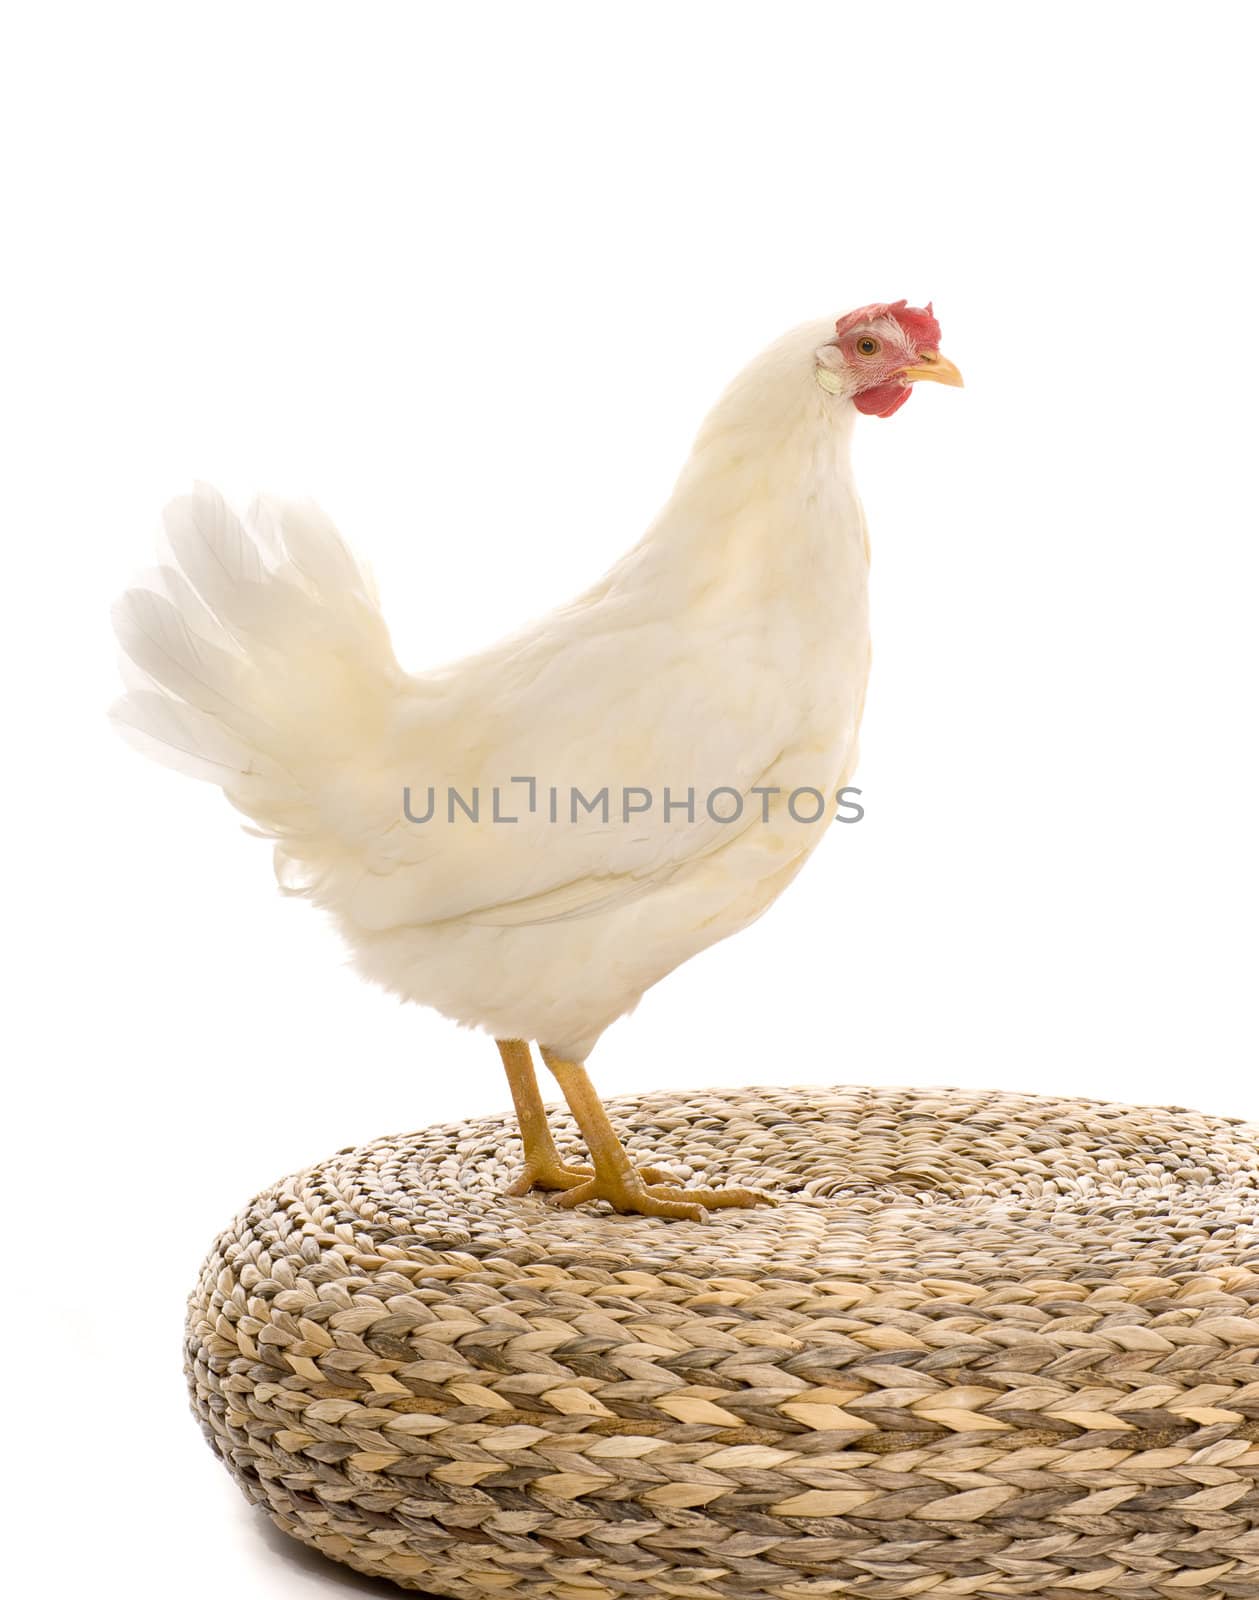 A chicken on white background in studio